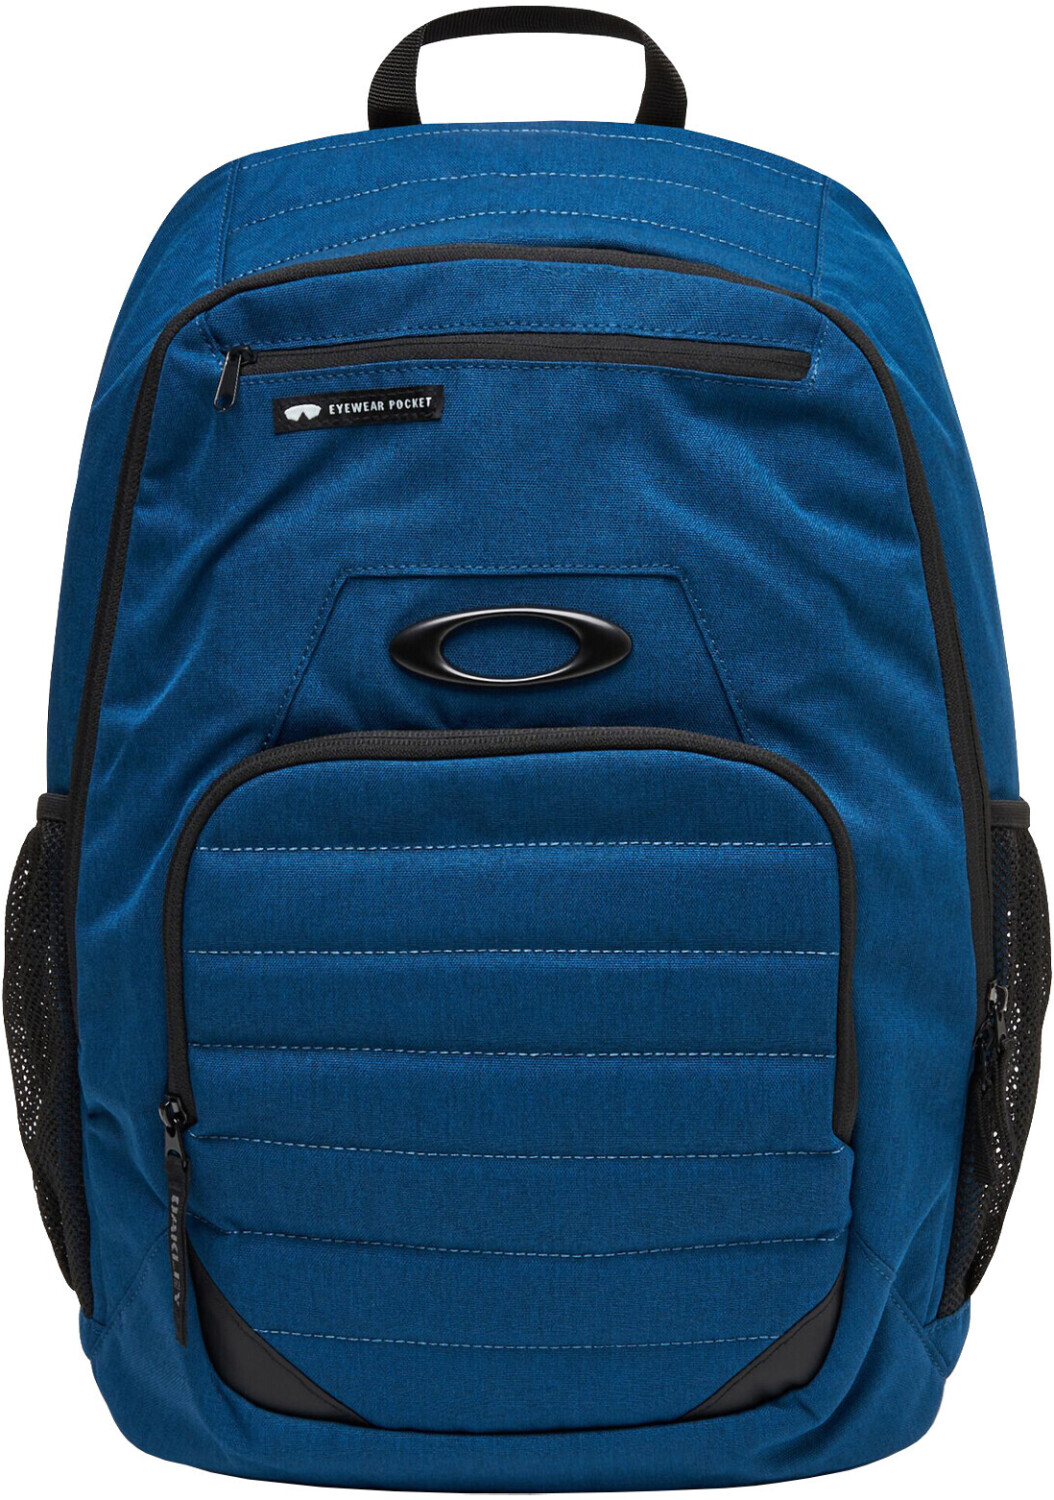 Photos - School Bag Oakley Enduro 25L 4.0 Backpack Poseidon Blue 